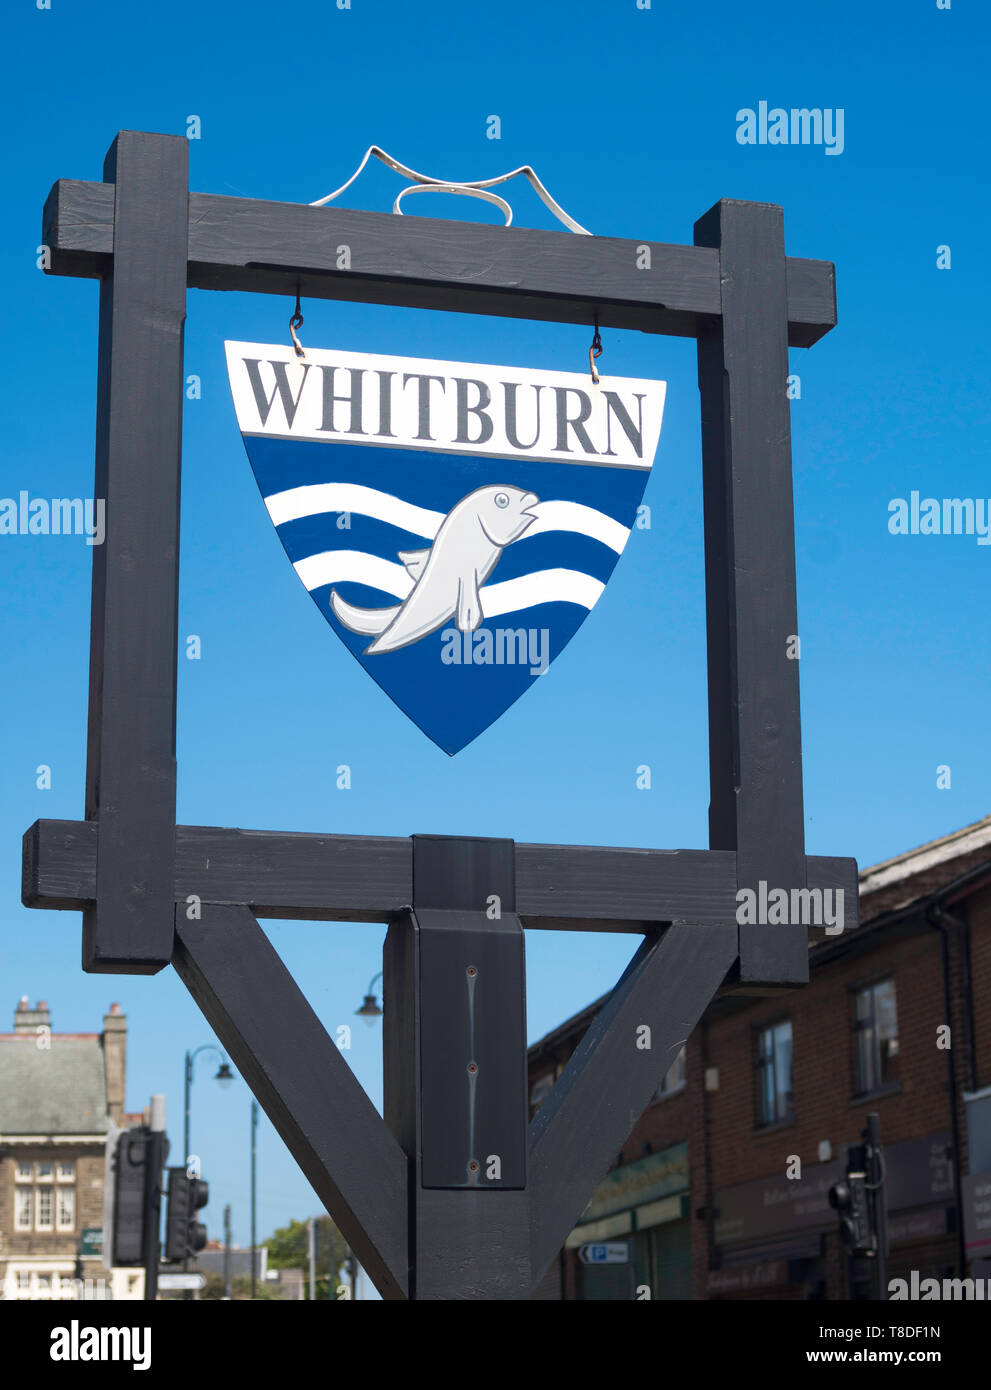 Whitburn panneau du village, North East England, UK Banque D'Images